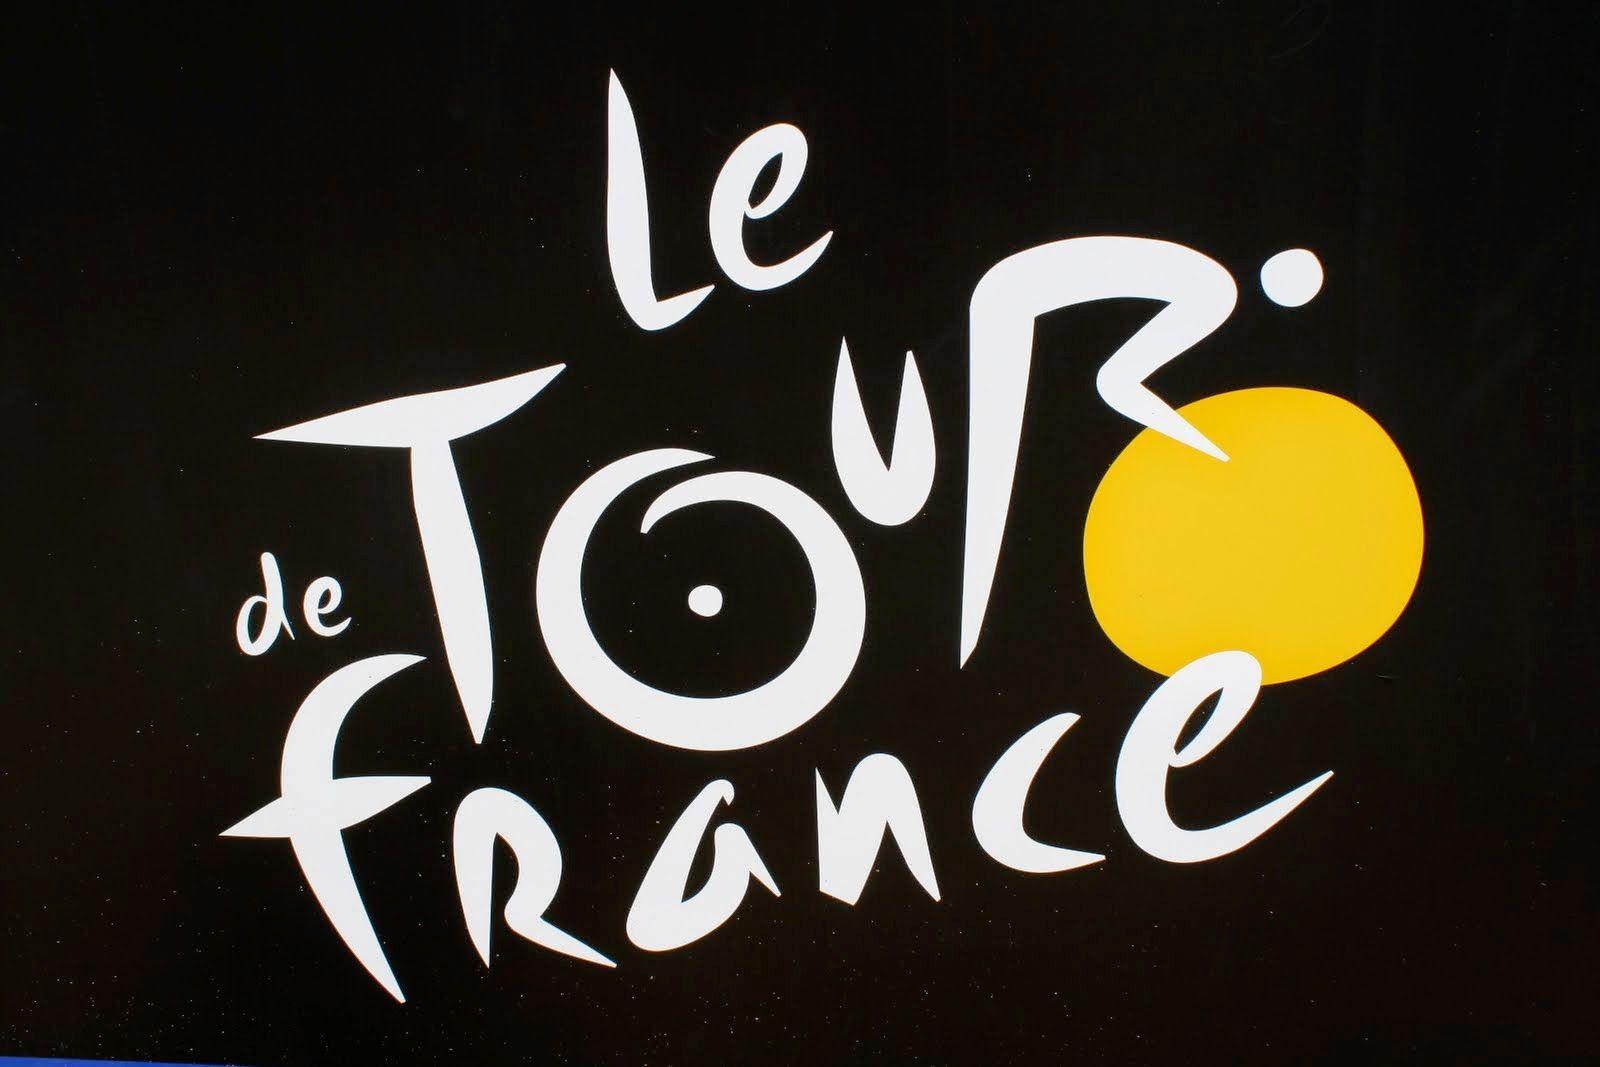 Tour DE France Logo Image HD Wallpaper Picture Photo Gallery